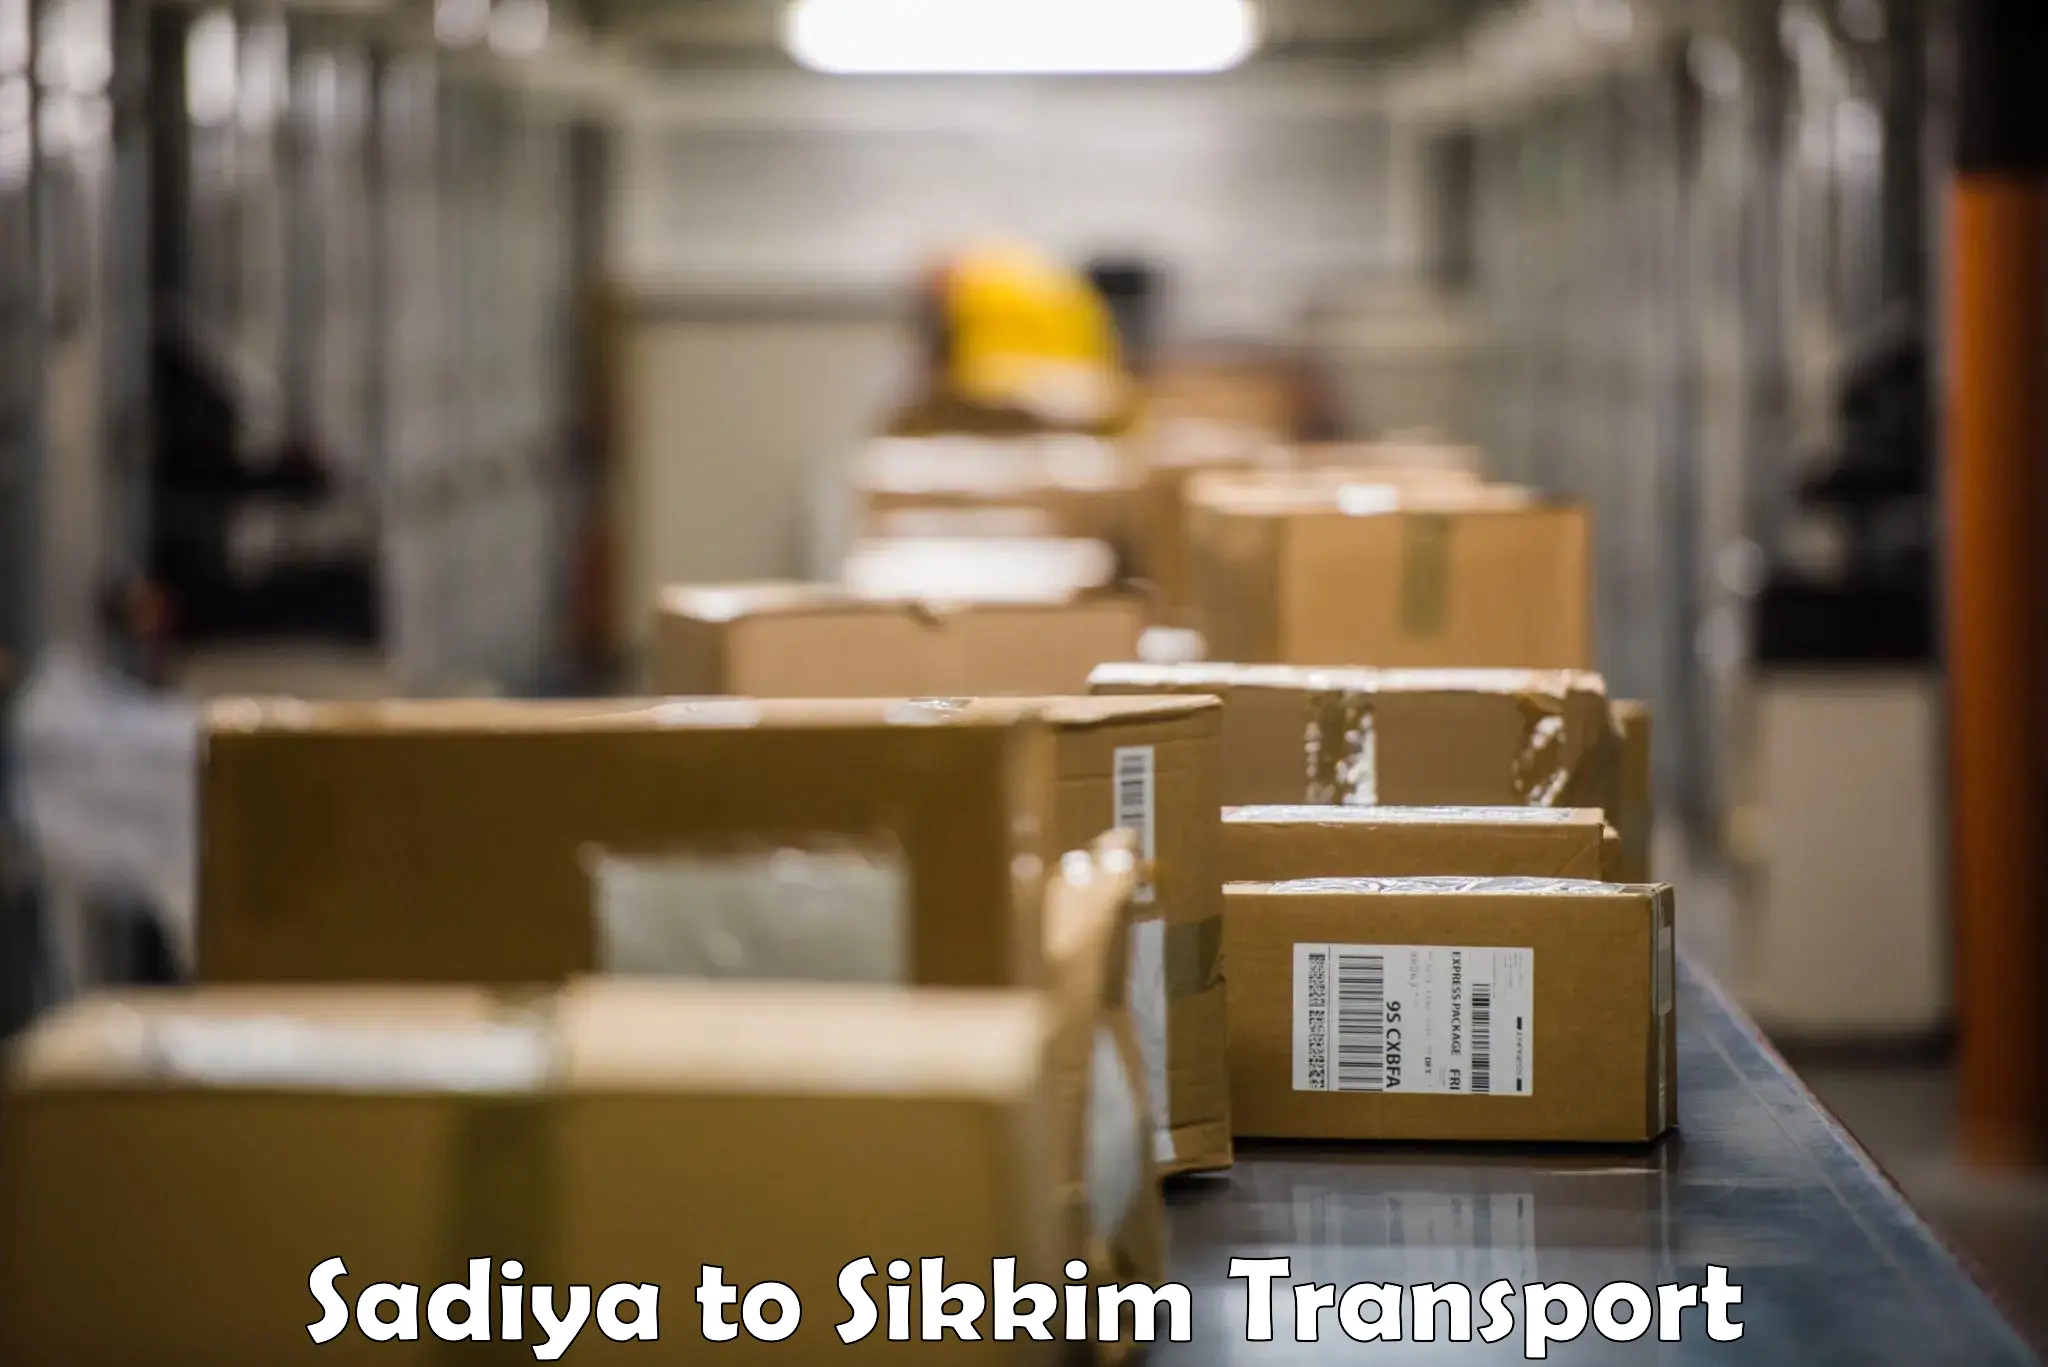 Furniture transport service in Sadiya to Pelling